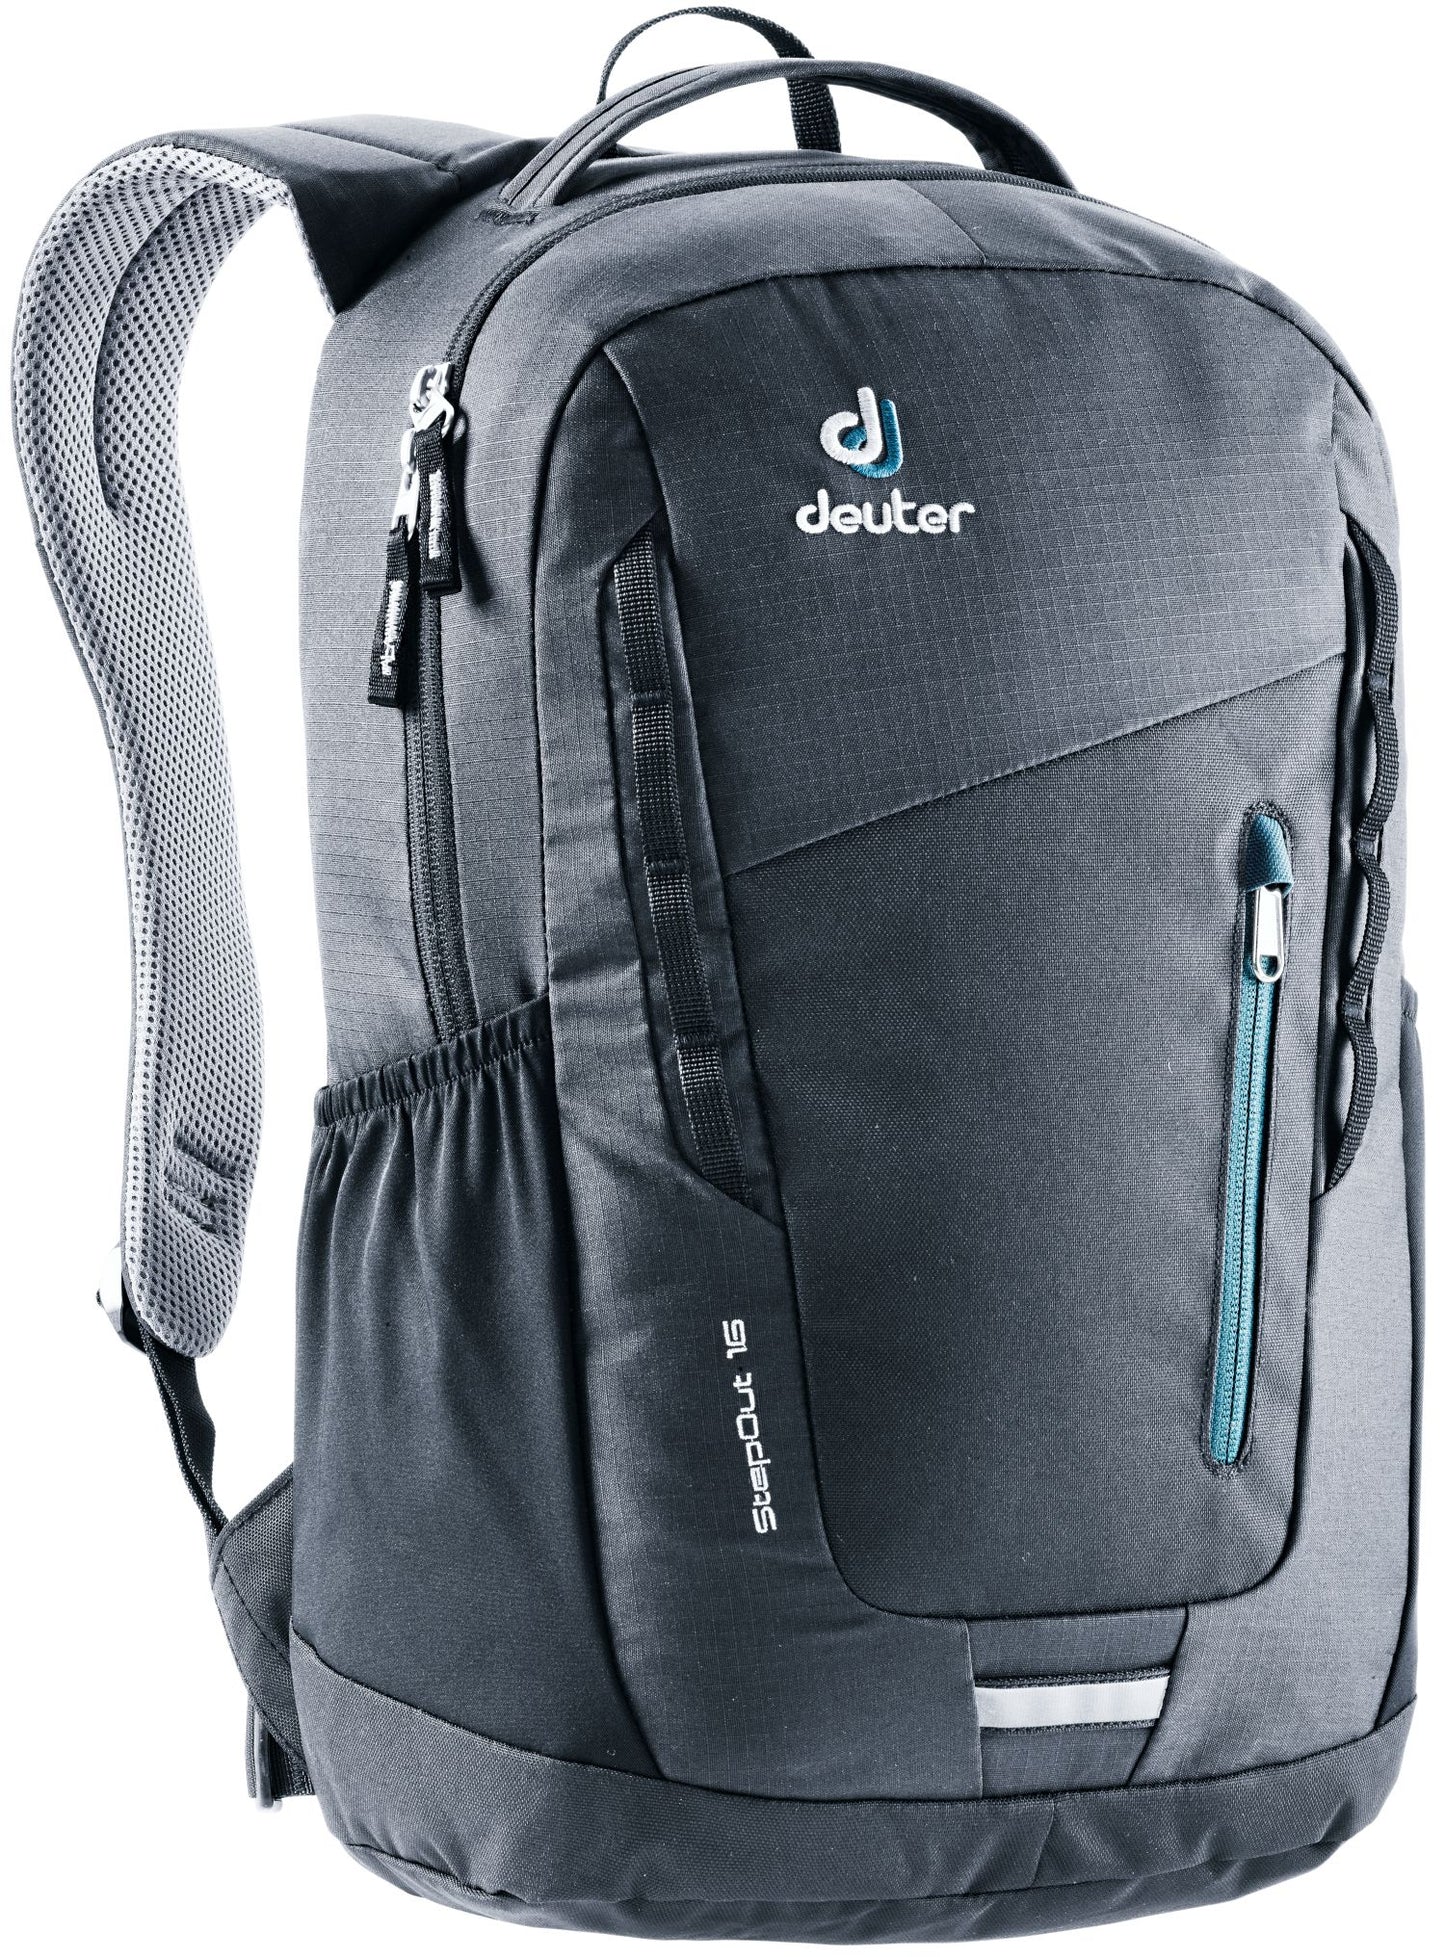 Deuter - Stepout 16 Backpack